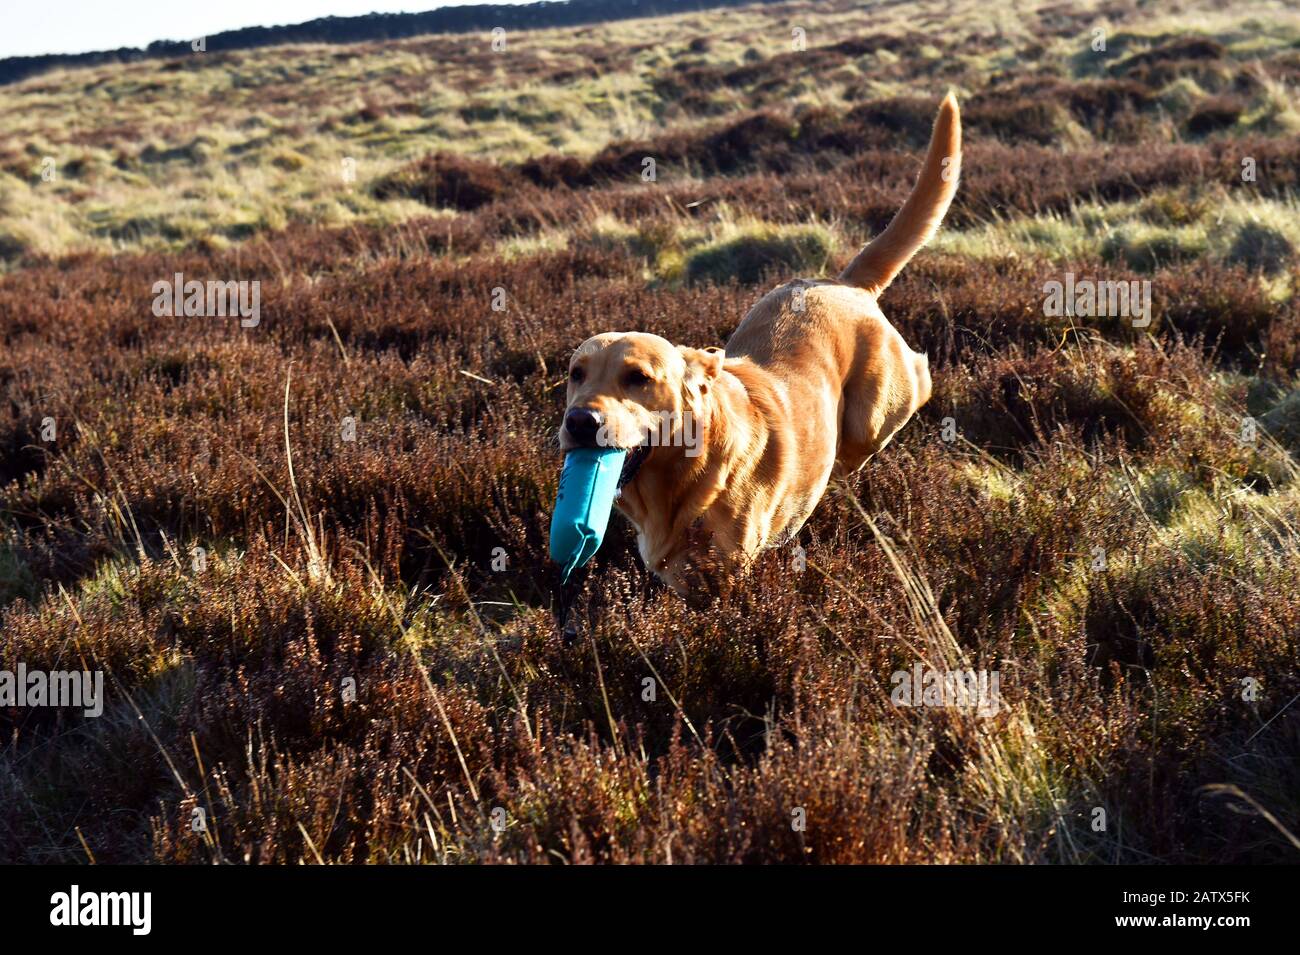 Un chien-canon court avec son oiseau factice lors d'une séance d'entraînement de chiens-canons Barden Moor Yorkshire Dales Royaume-Uni Banque D'Images